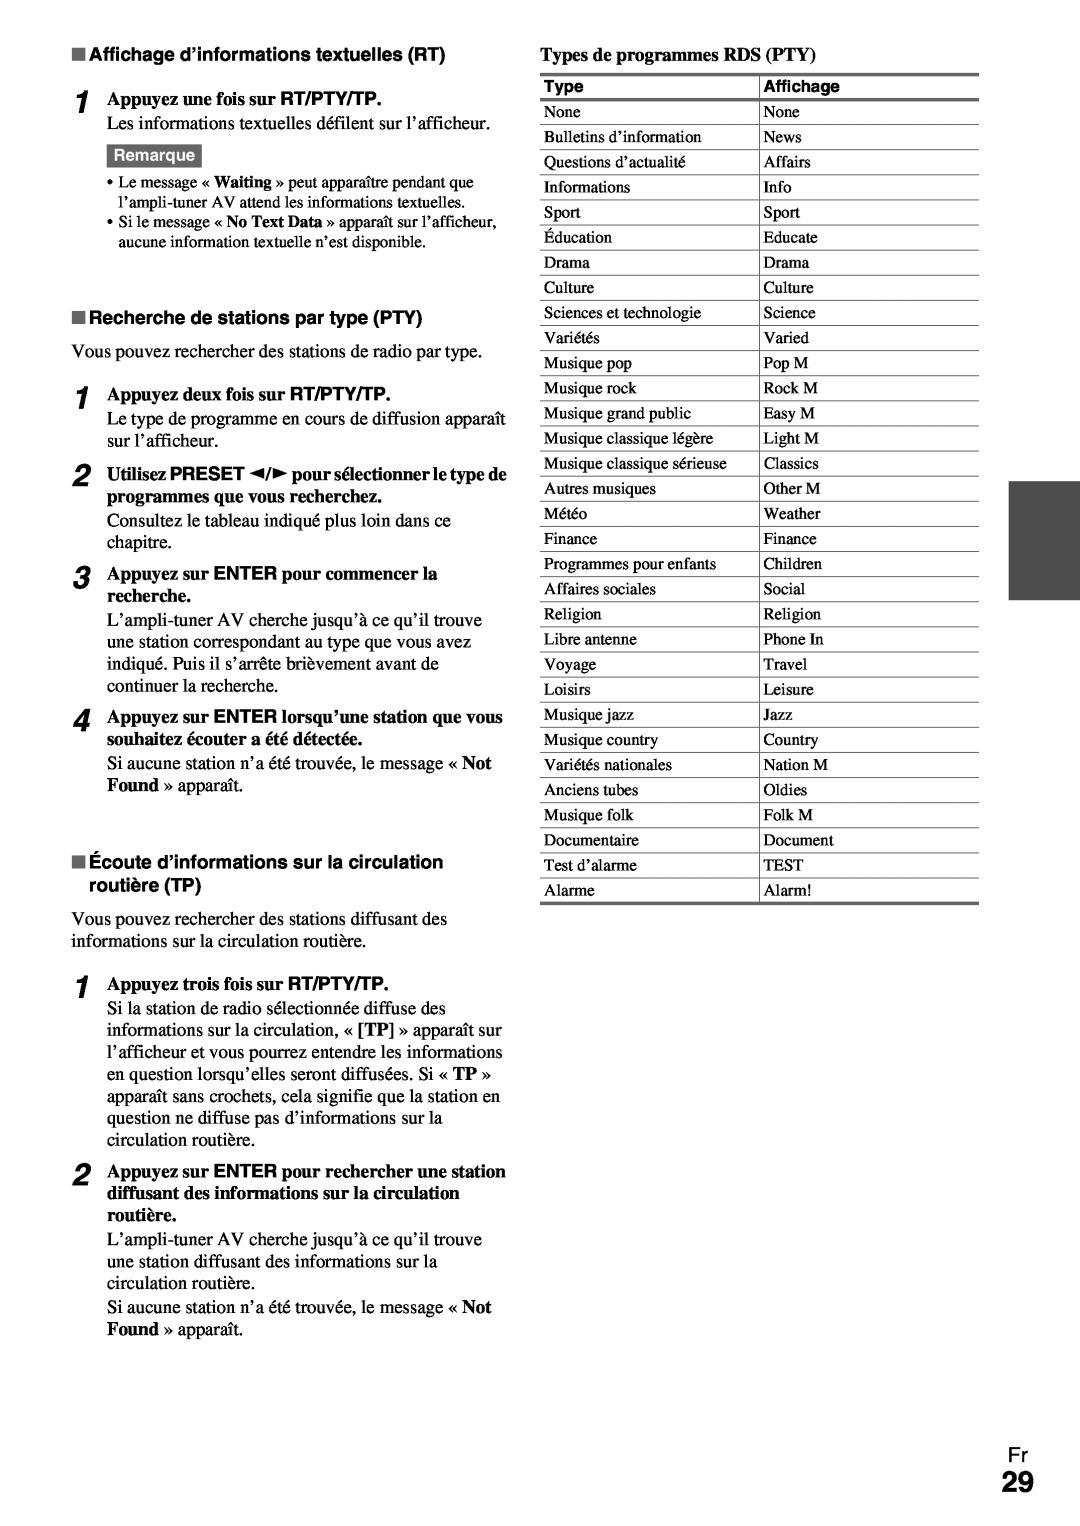 Onkyo HT-R990 instruction manual Affichage d’informations textuelles RT, Recherche de stations par type PTY 